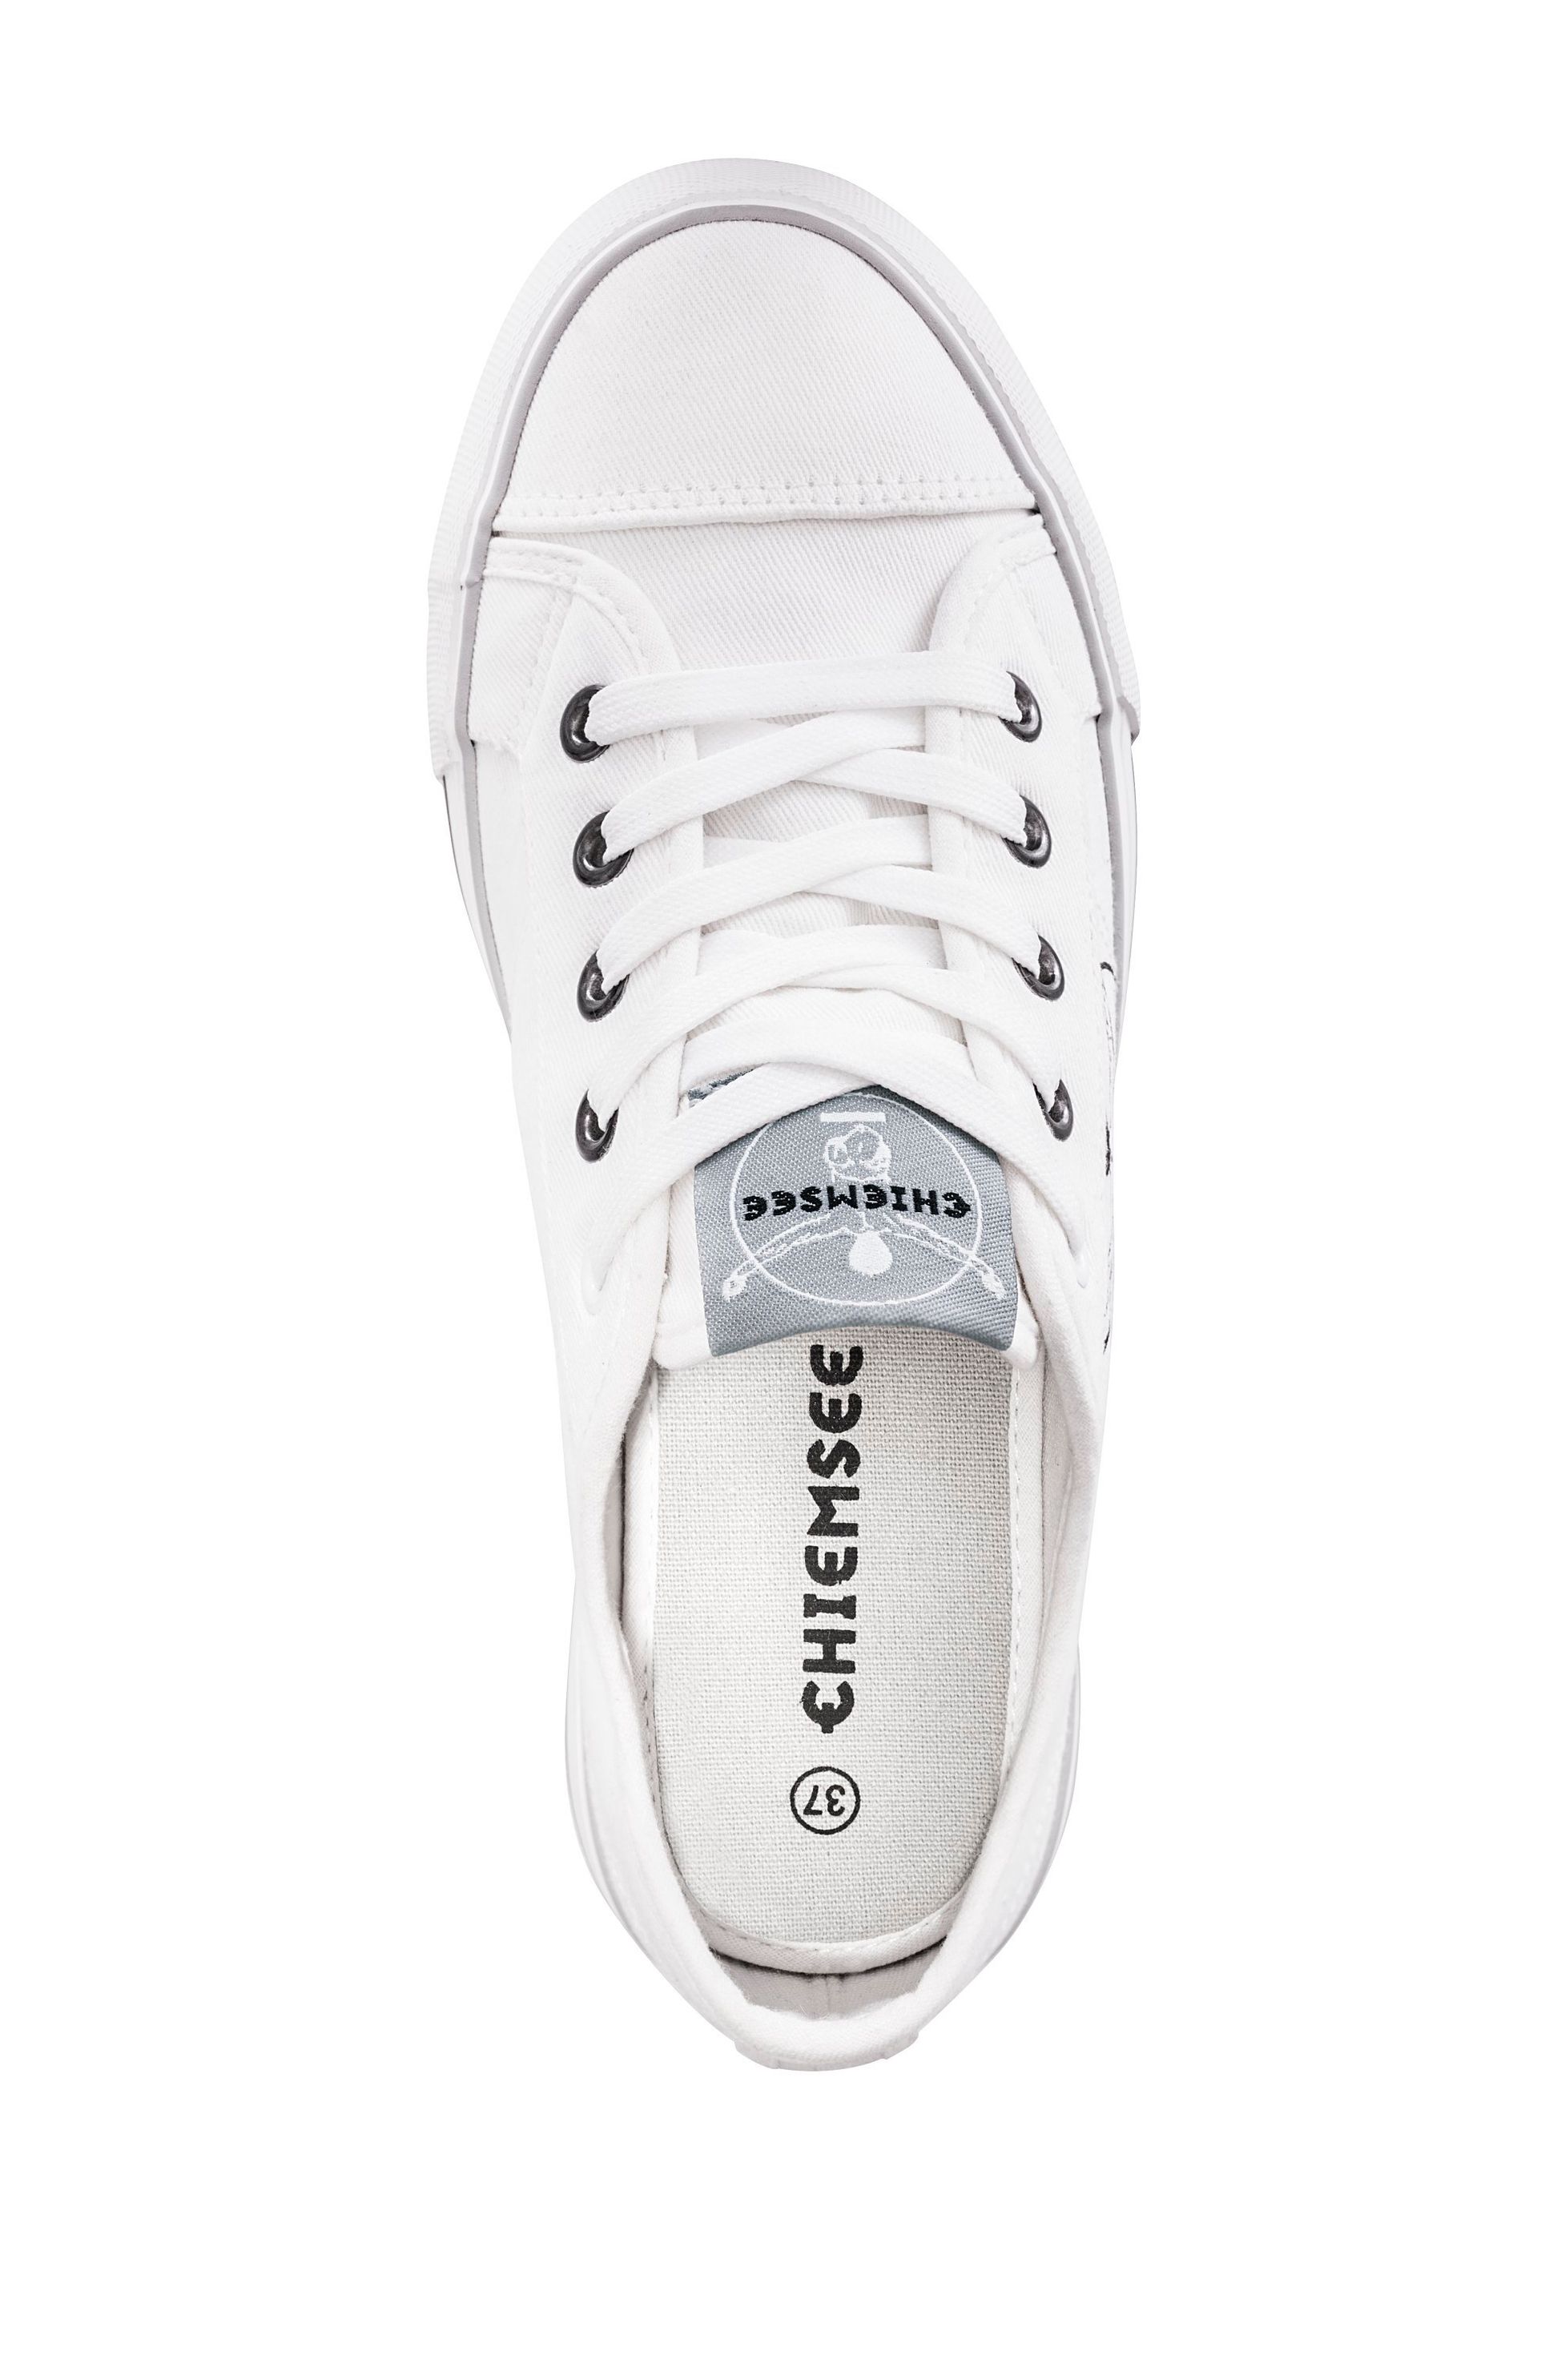 Chiemsee Sneaker, white grey Größe: 39 bestellen | Weltbild.de